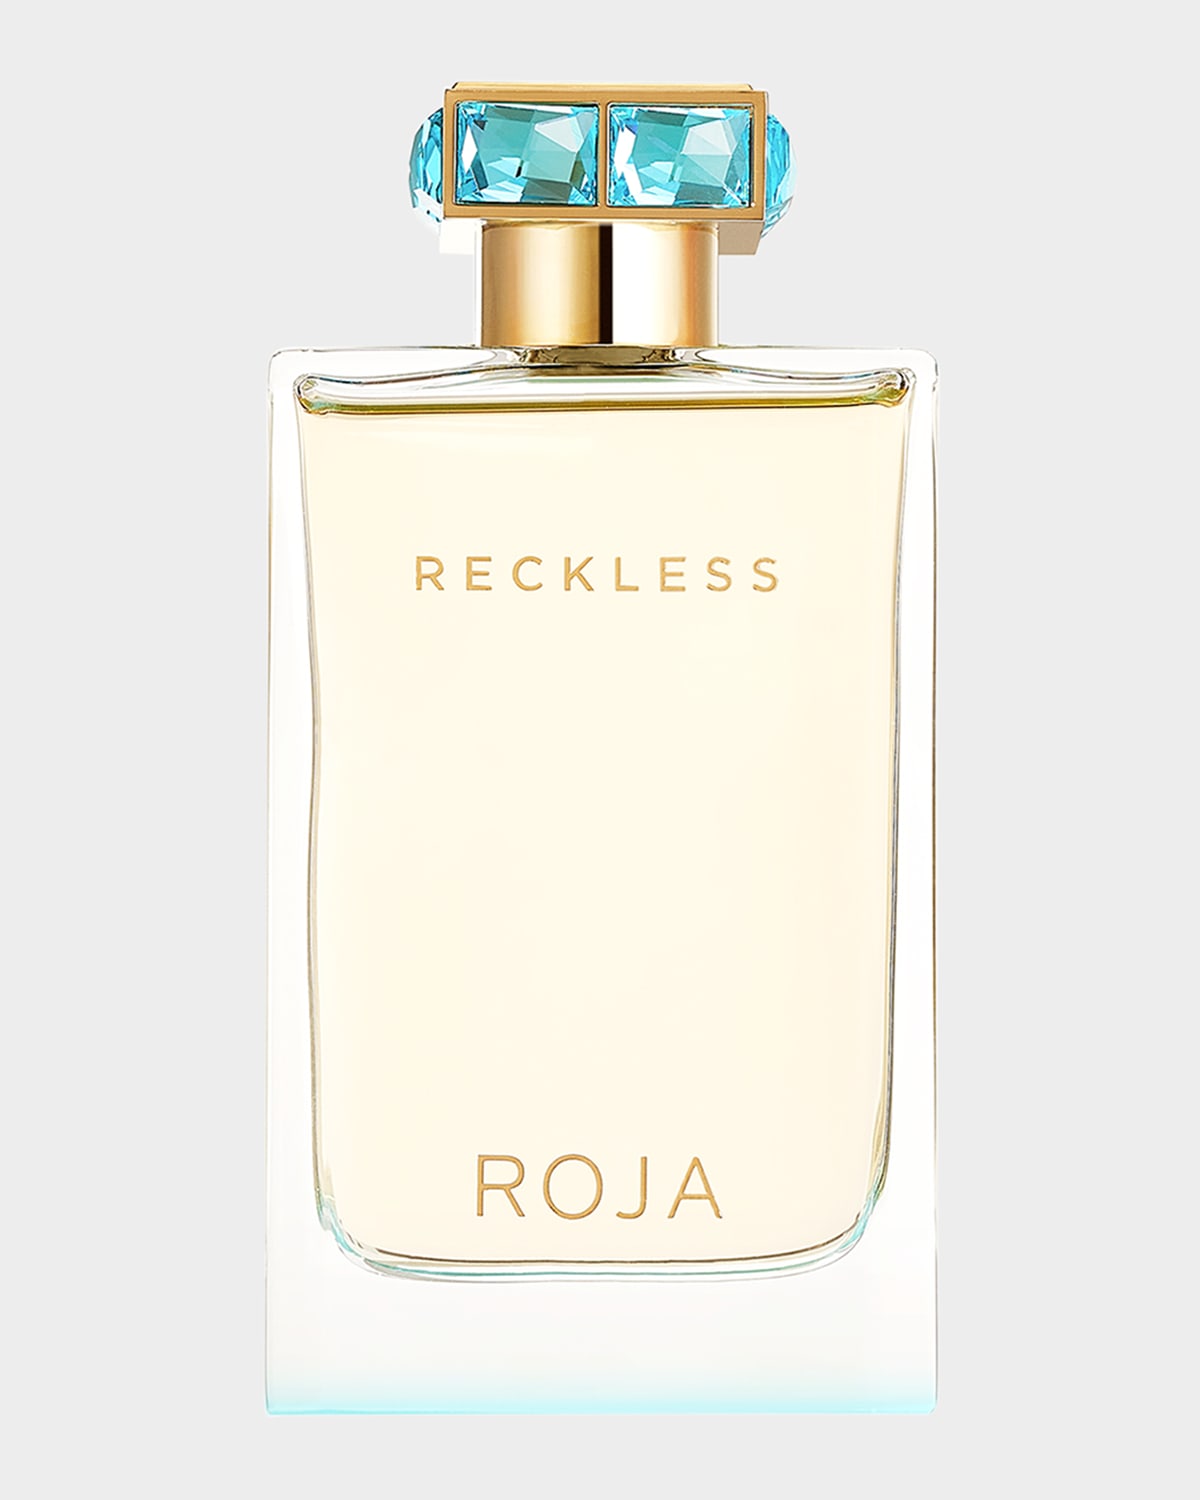 Reckless Pour Femme Eau de Parfum, 2.5 oz.